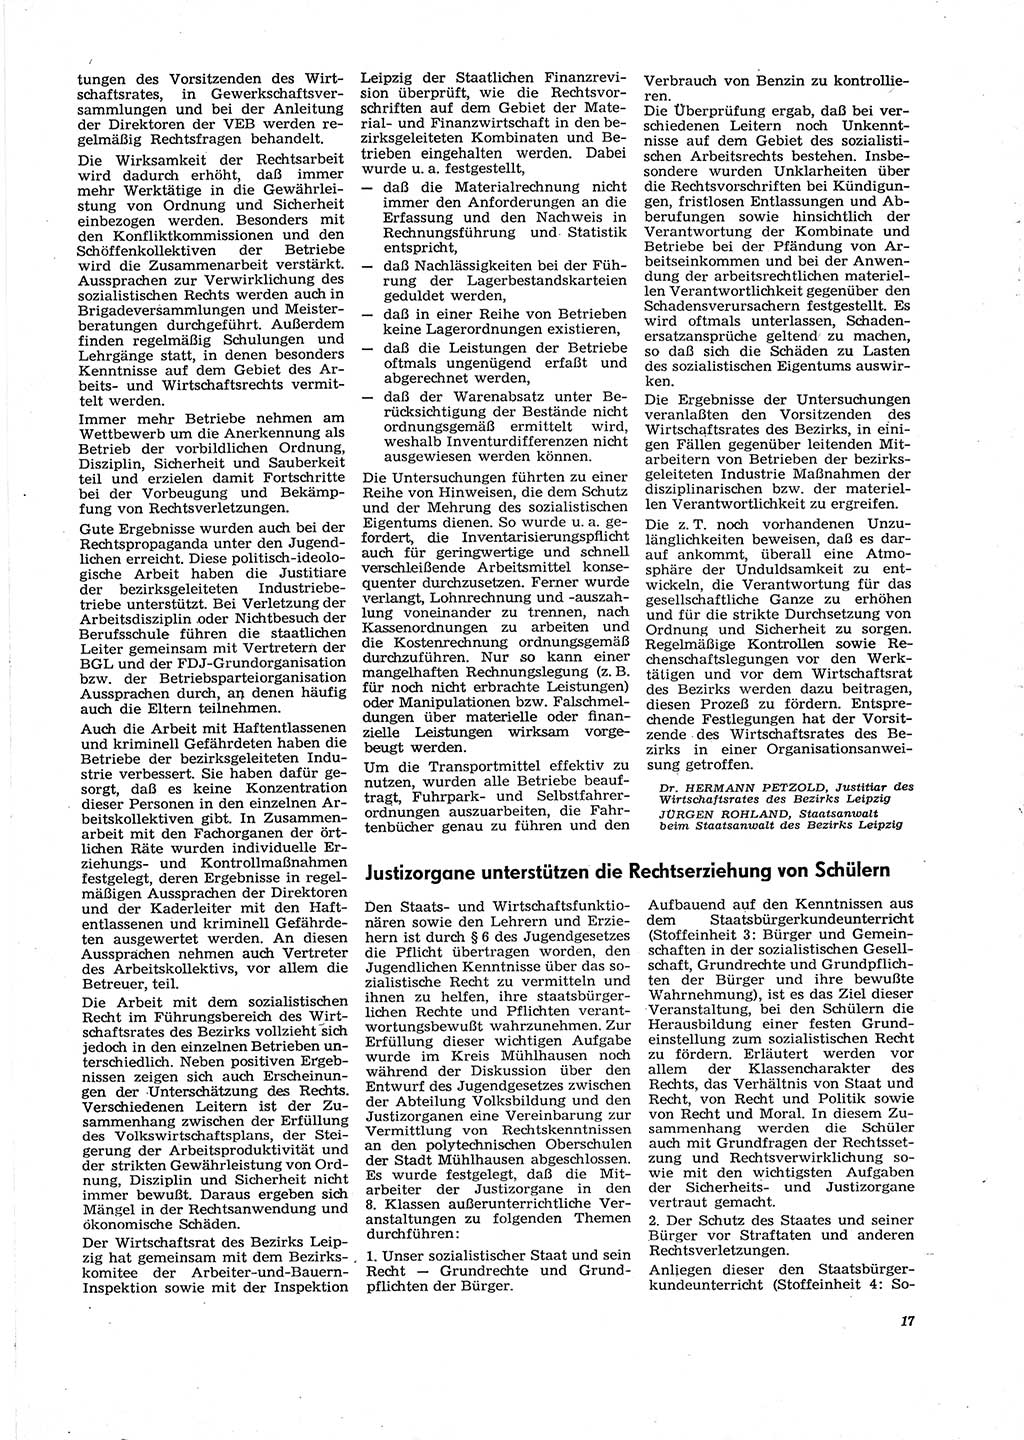 Neue Justiz (NJ), Zeitschrift für Recht und Rechtswissenschaft [Deutsche Demokratische Republik (DDR)], 29. Jahrgang 1975, Seite 17 (NJ DDR 1975, S. 17)